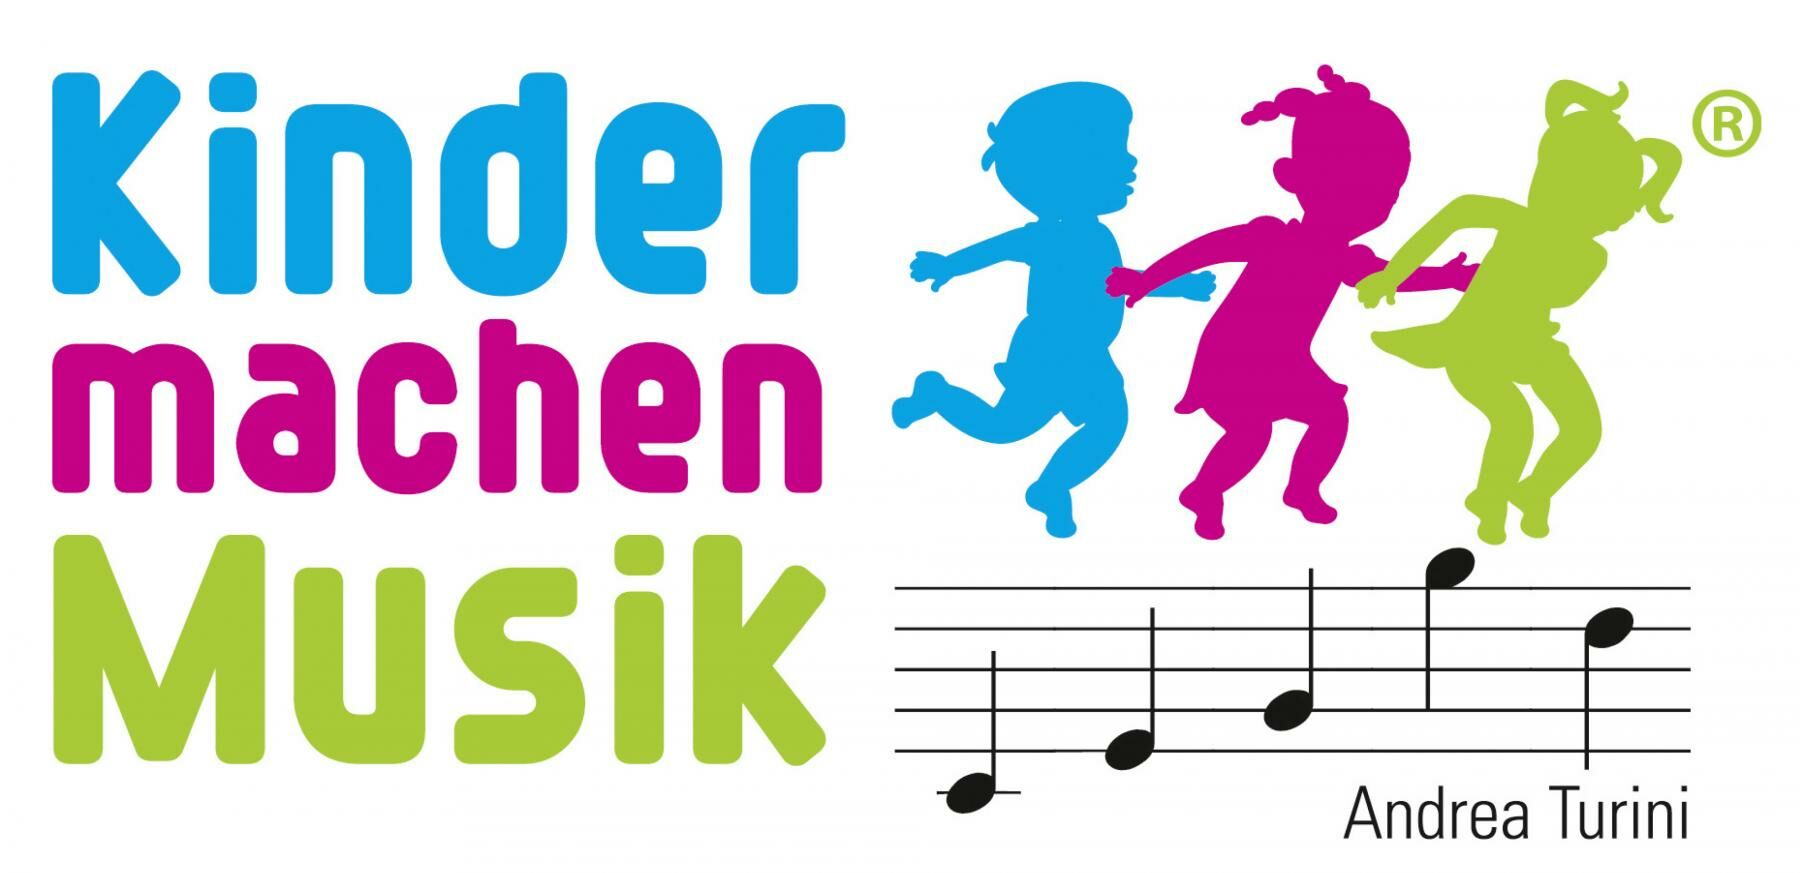 Kinder machen Musik, Logo